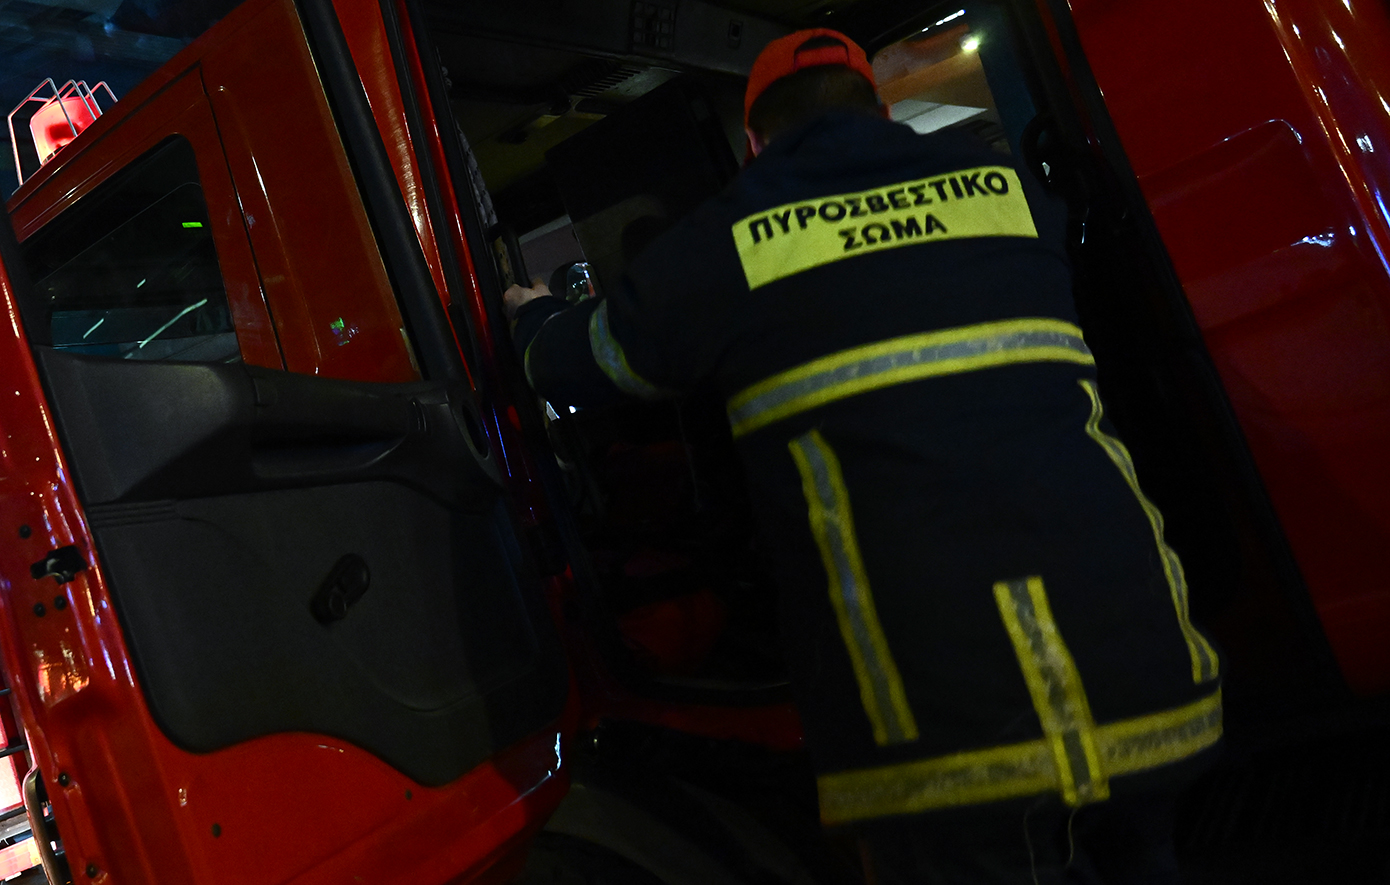 Η πυρκαγιά σε αποθηκευτικό χώρο επικίνδυνων υλικών της ΠΥΡΚΑΛ στα Δερβενοχώρια τέθηκε υπό μερικό έλεγχο